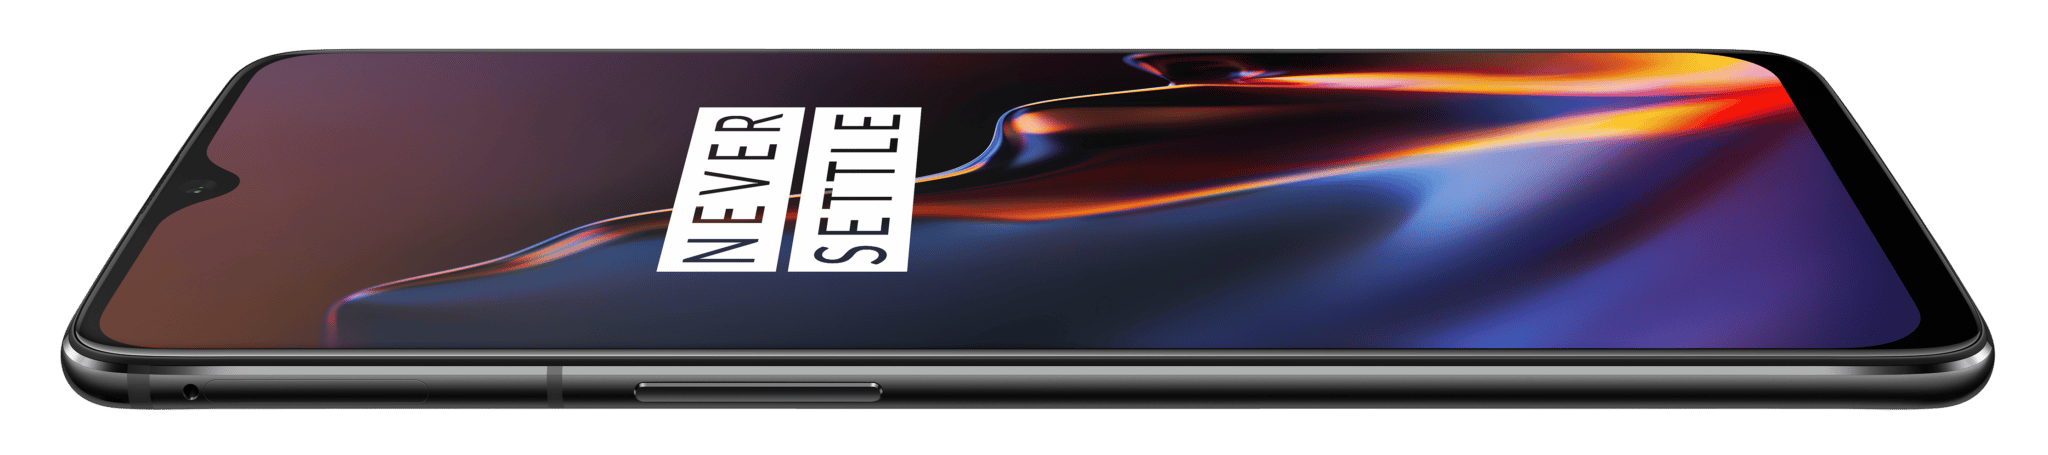 OnePlus 6T : un smartphone puissant et pas cher